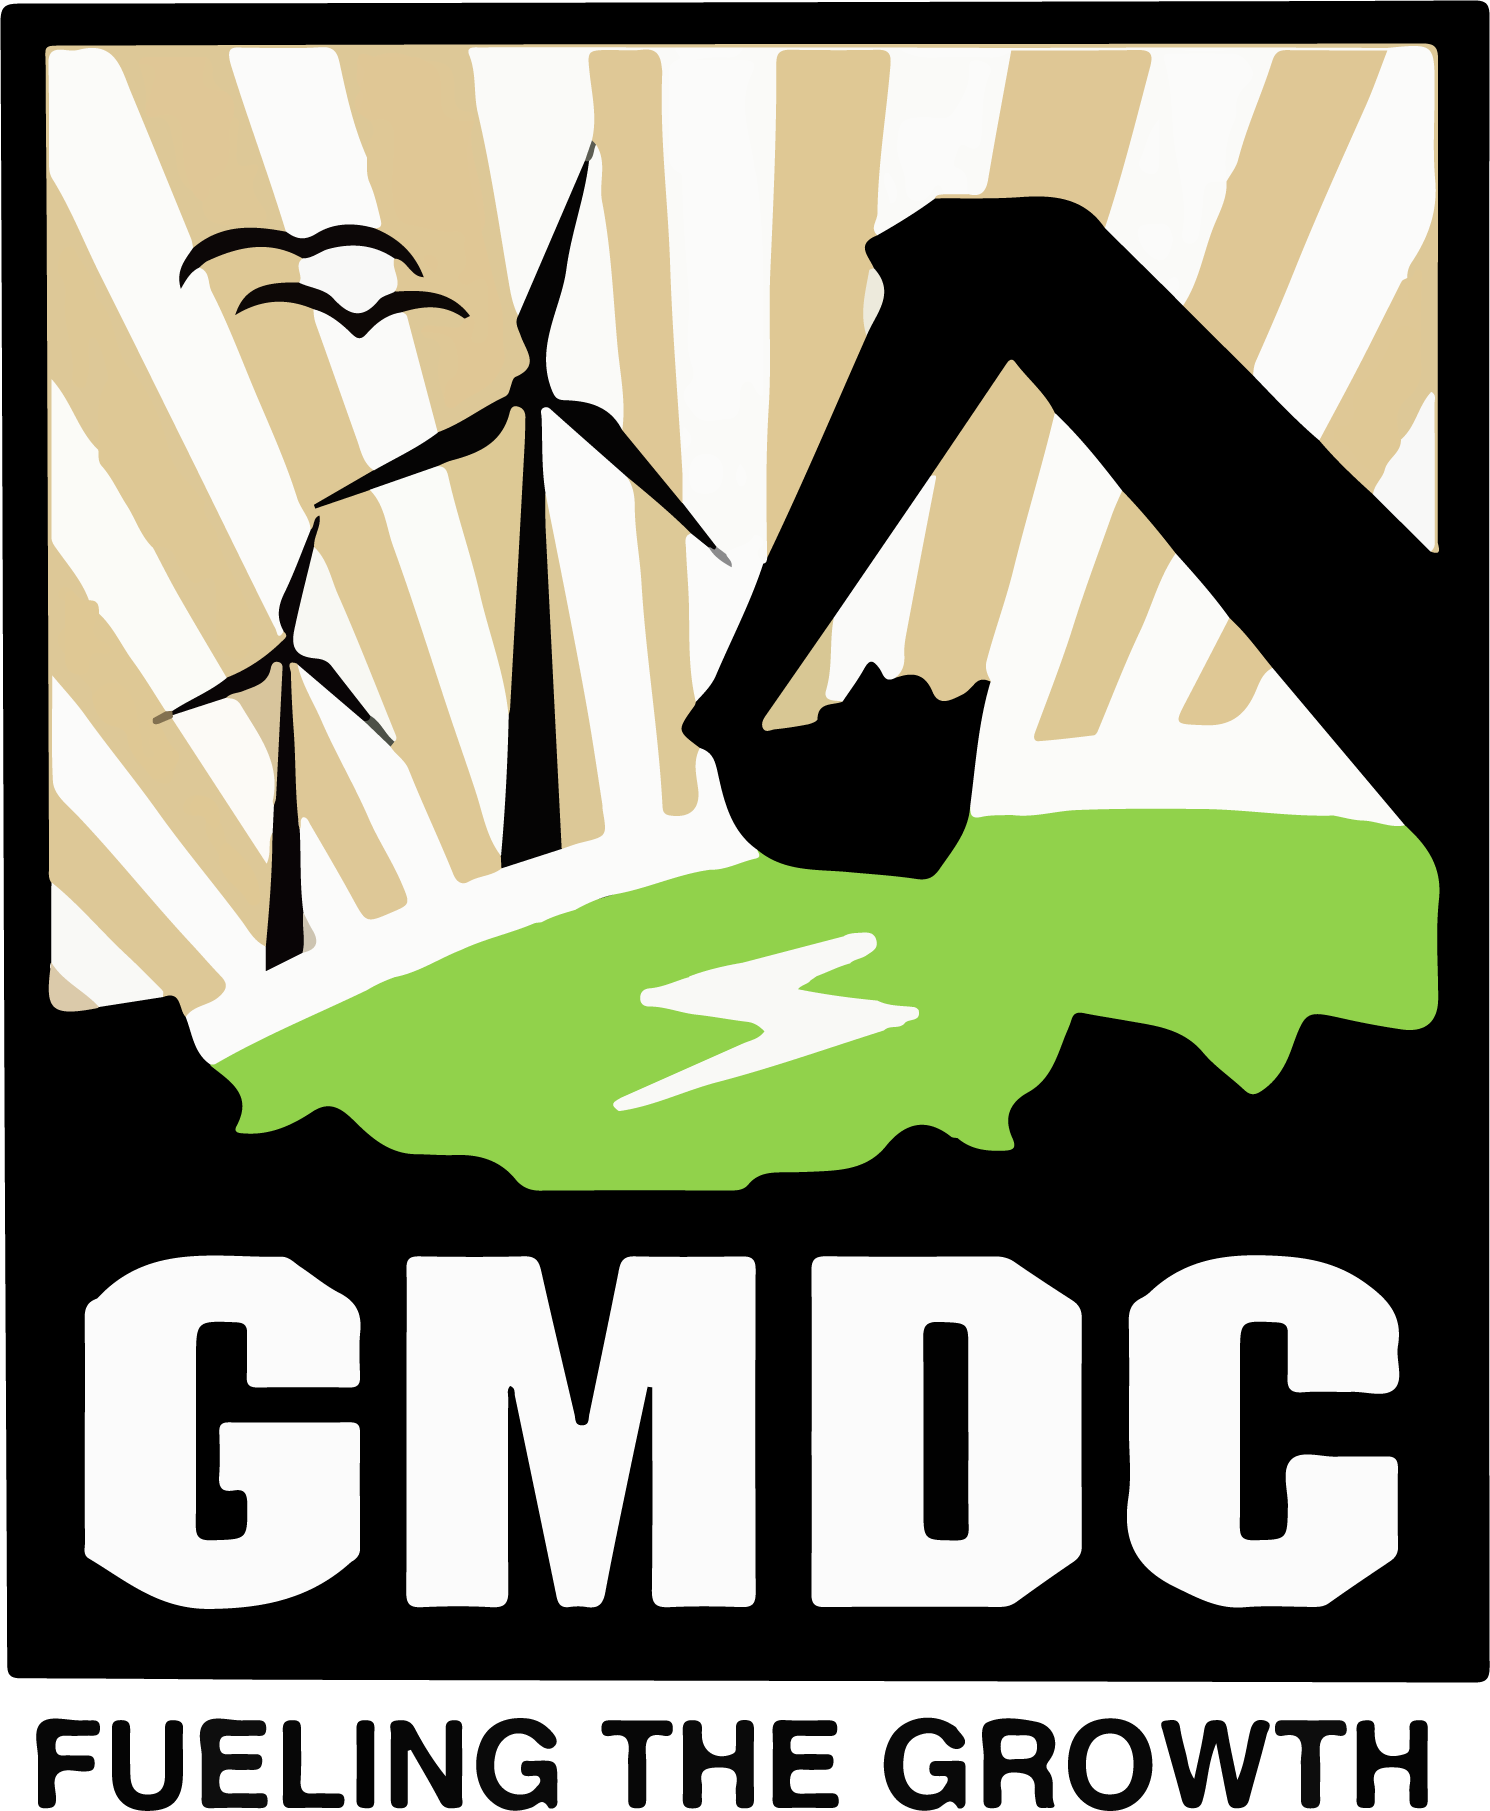 Gujarat Mineral Development logo large (transparent PNG)